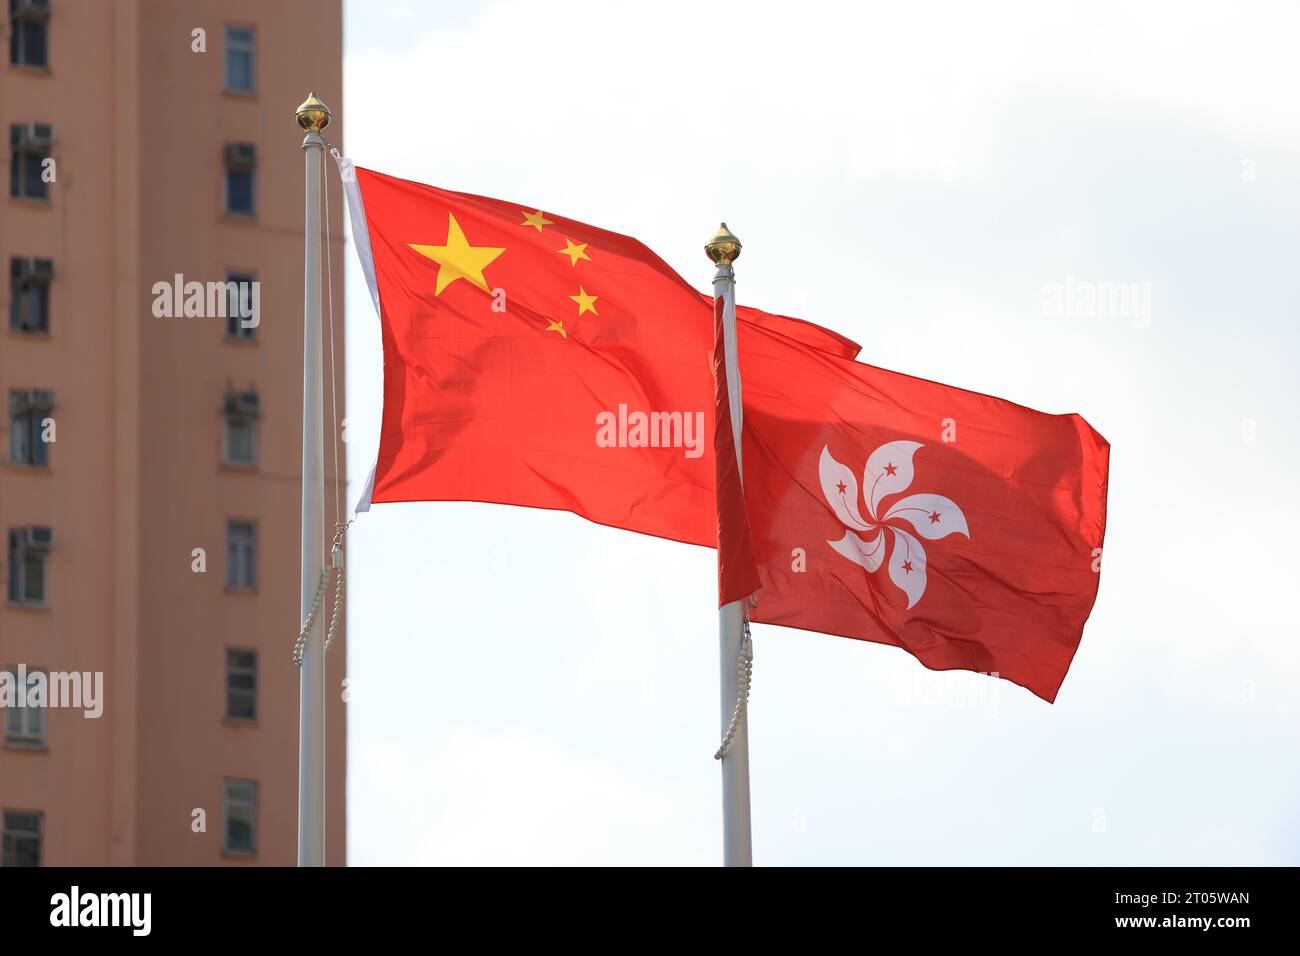 Chinesische und hongkong-Flagge, die bei der Feier des 74. Jahrestages der Volksrepublik China mit der Real esta errichtet wurde Stockfoto